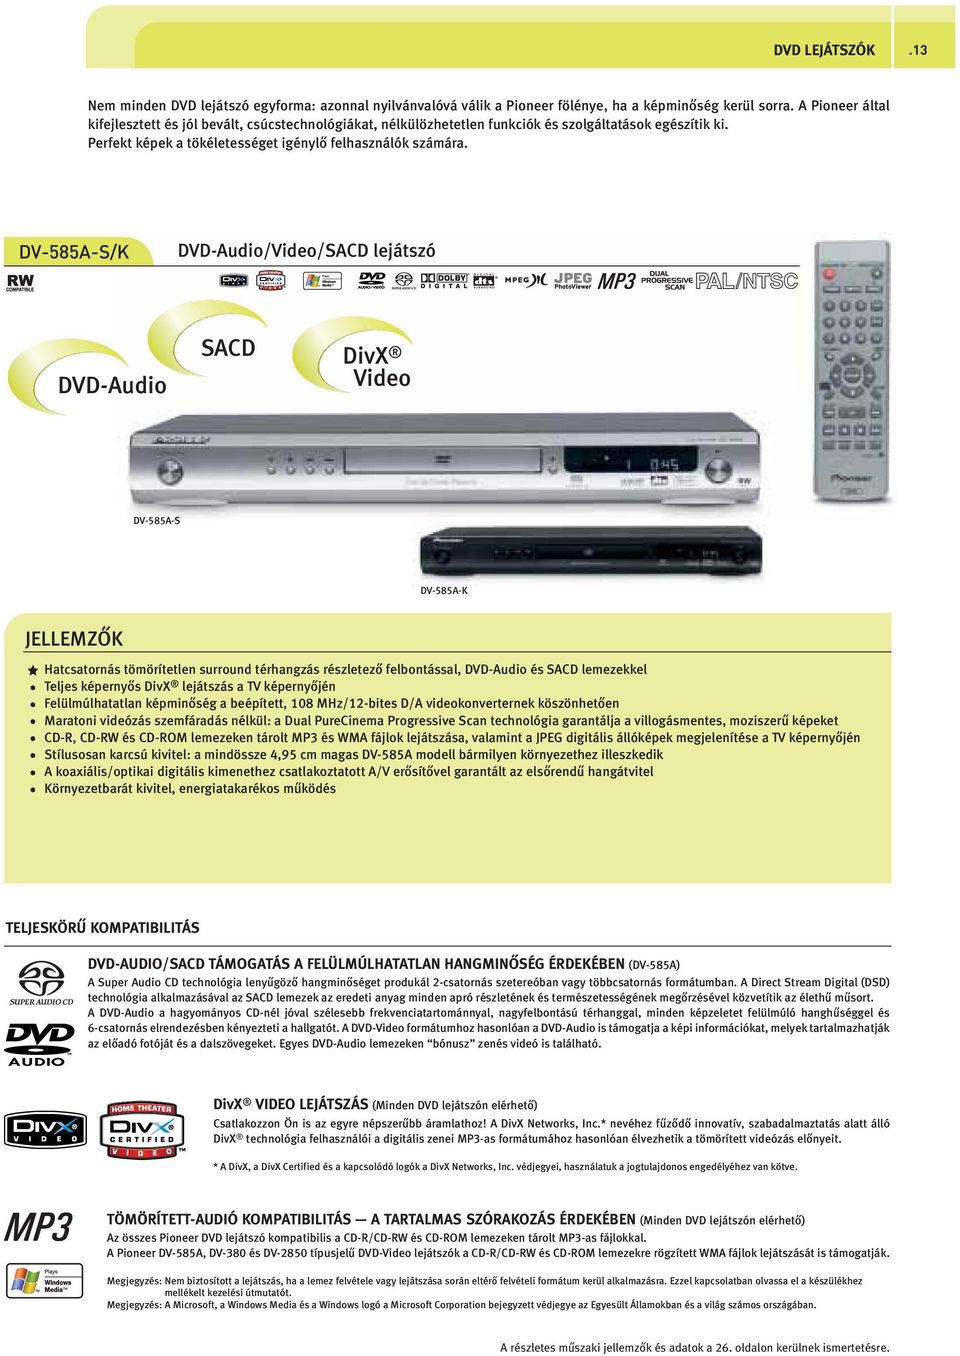 DV-585A-S/K DVD-Audio/Video/SACD lejátszó b/a DVD-Audio SACD DivX Video DV-585A-S DV-585A-K JEEMZŐK Hatcsatornás tömörítetlen surround térhangzás részletező felbontással, DVD-Audio és SACD lemezekkel